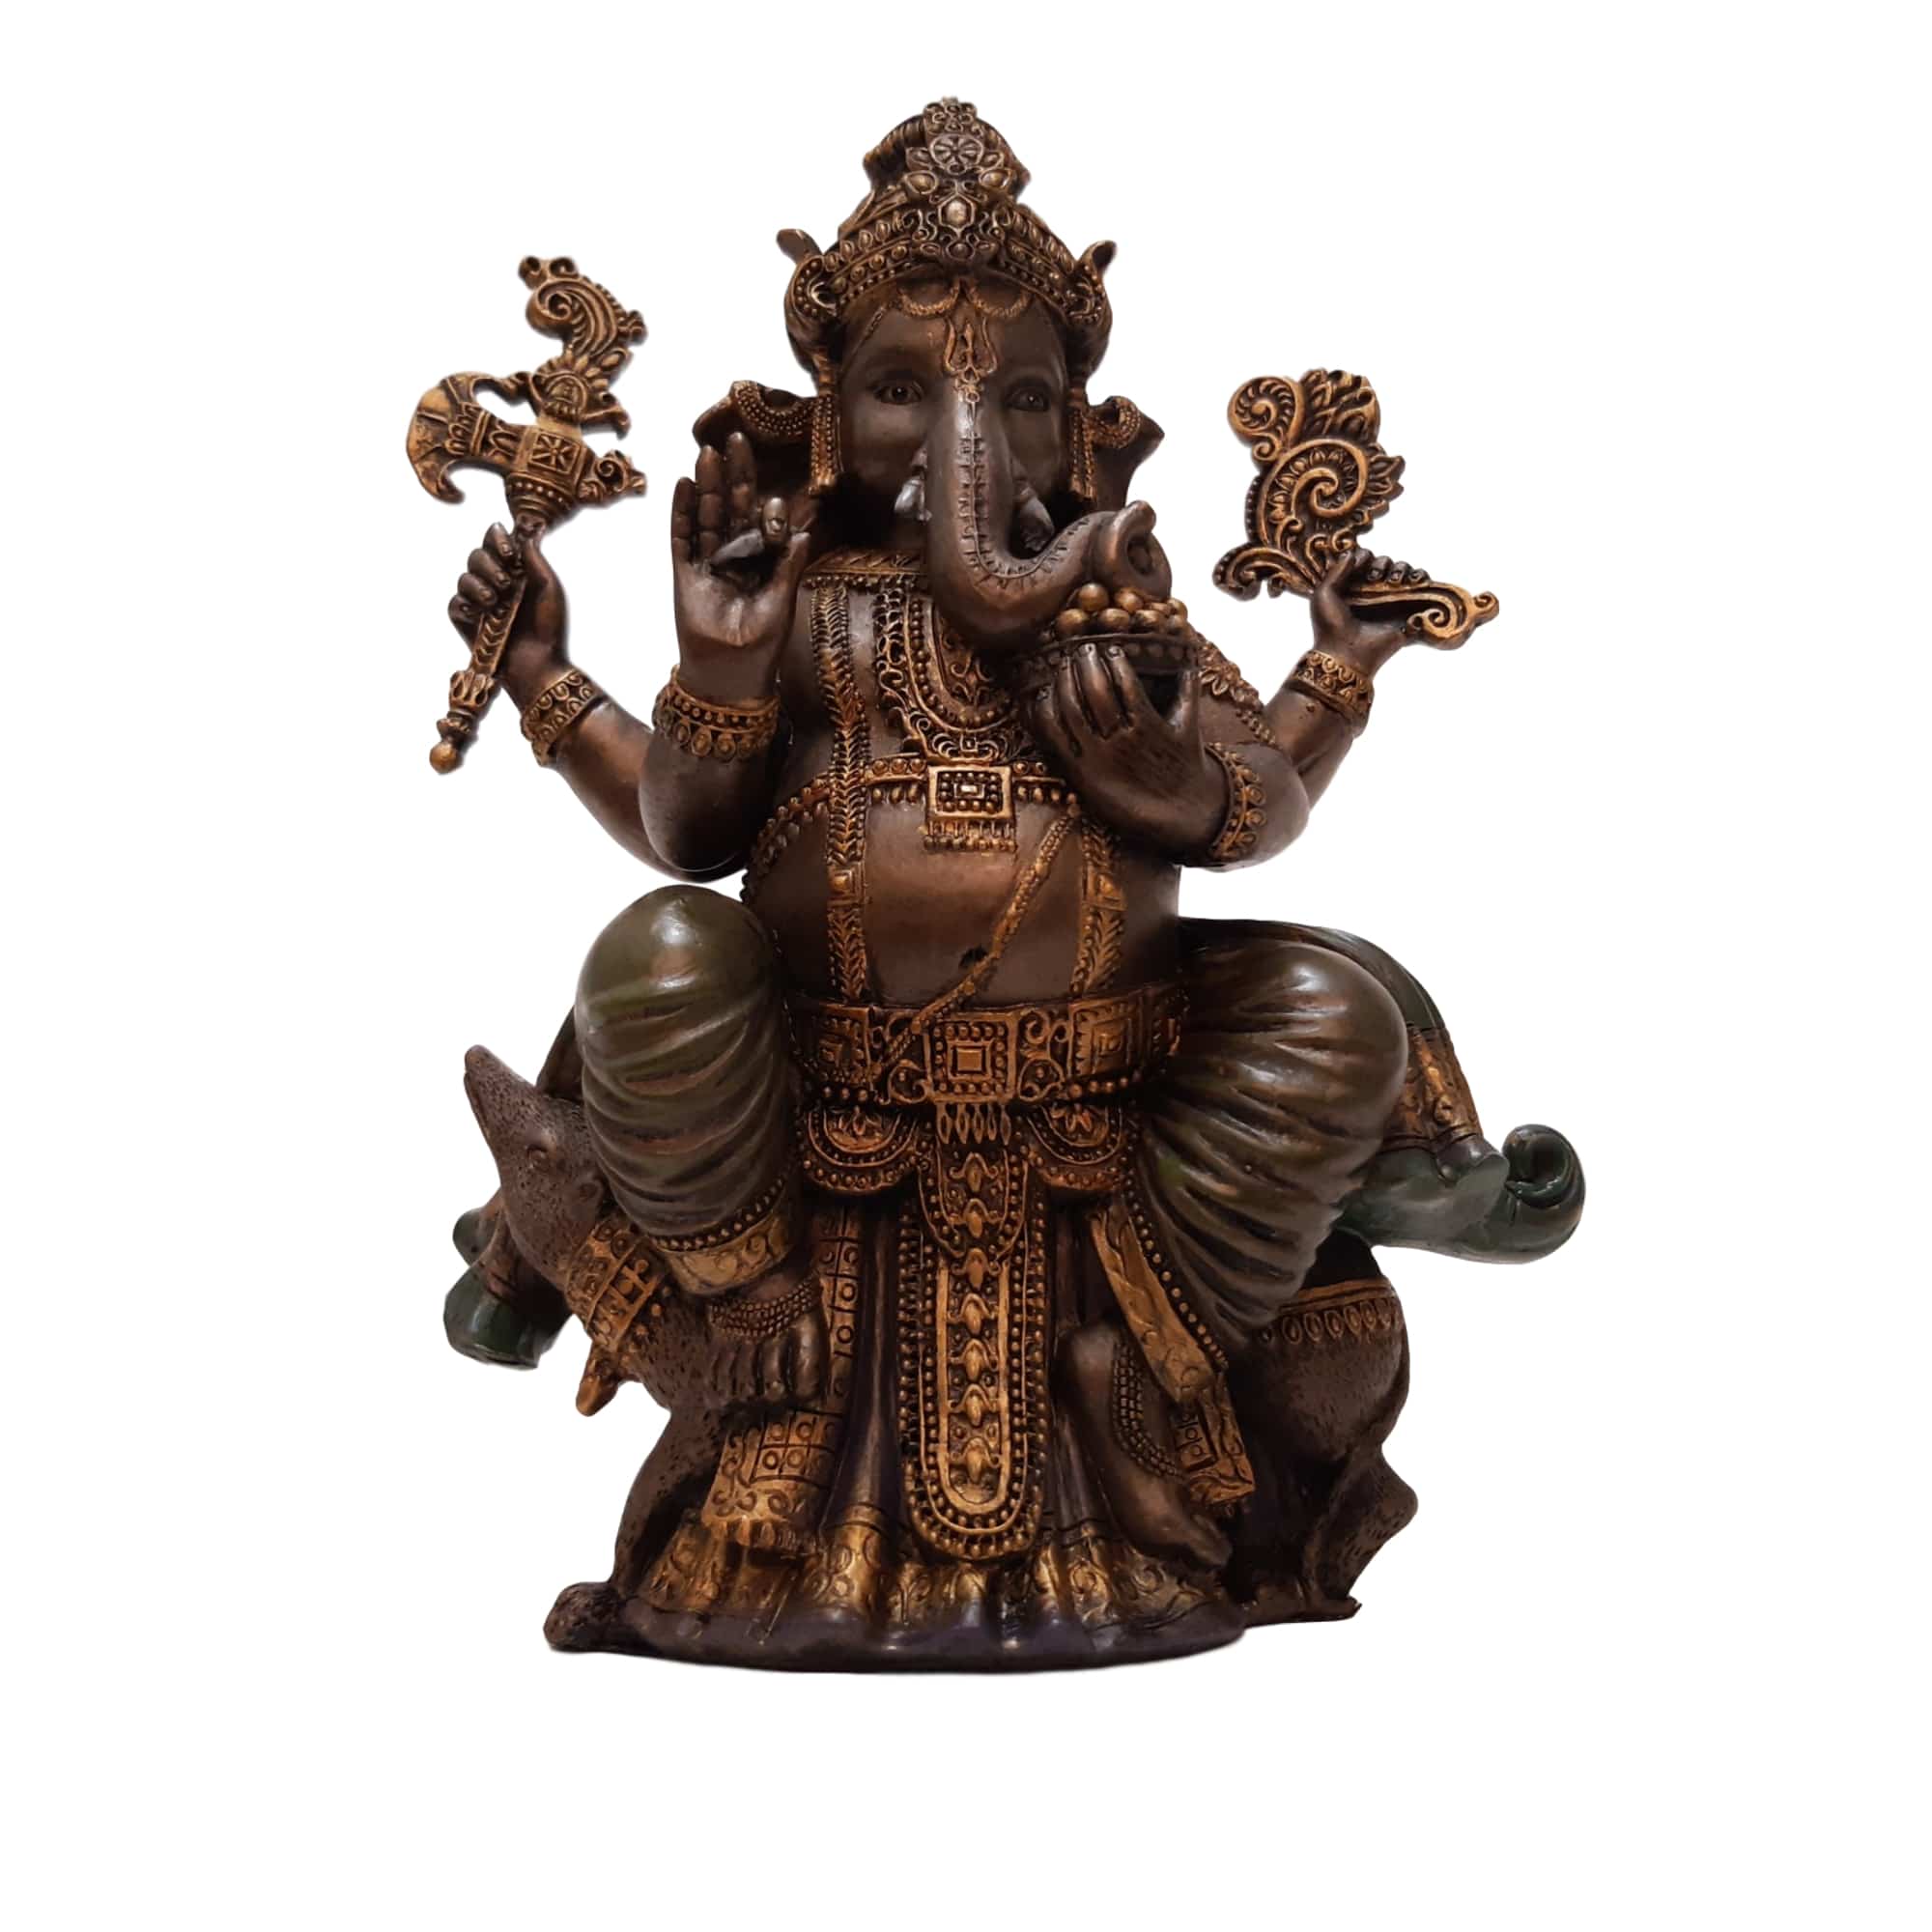 Ganesha Beeld Rat 20 cm kopen doet u bij Boeddhabeeld.be!